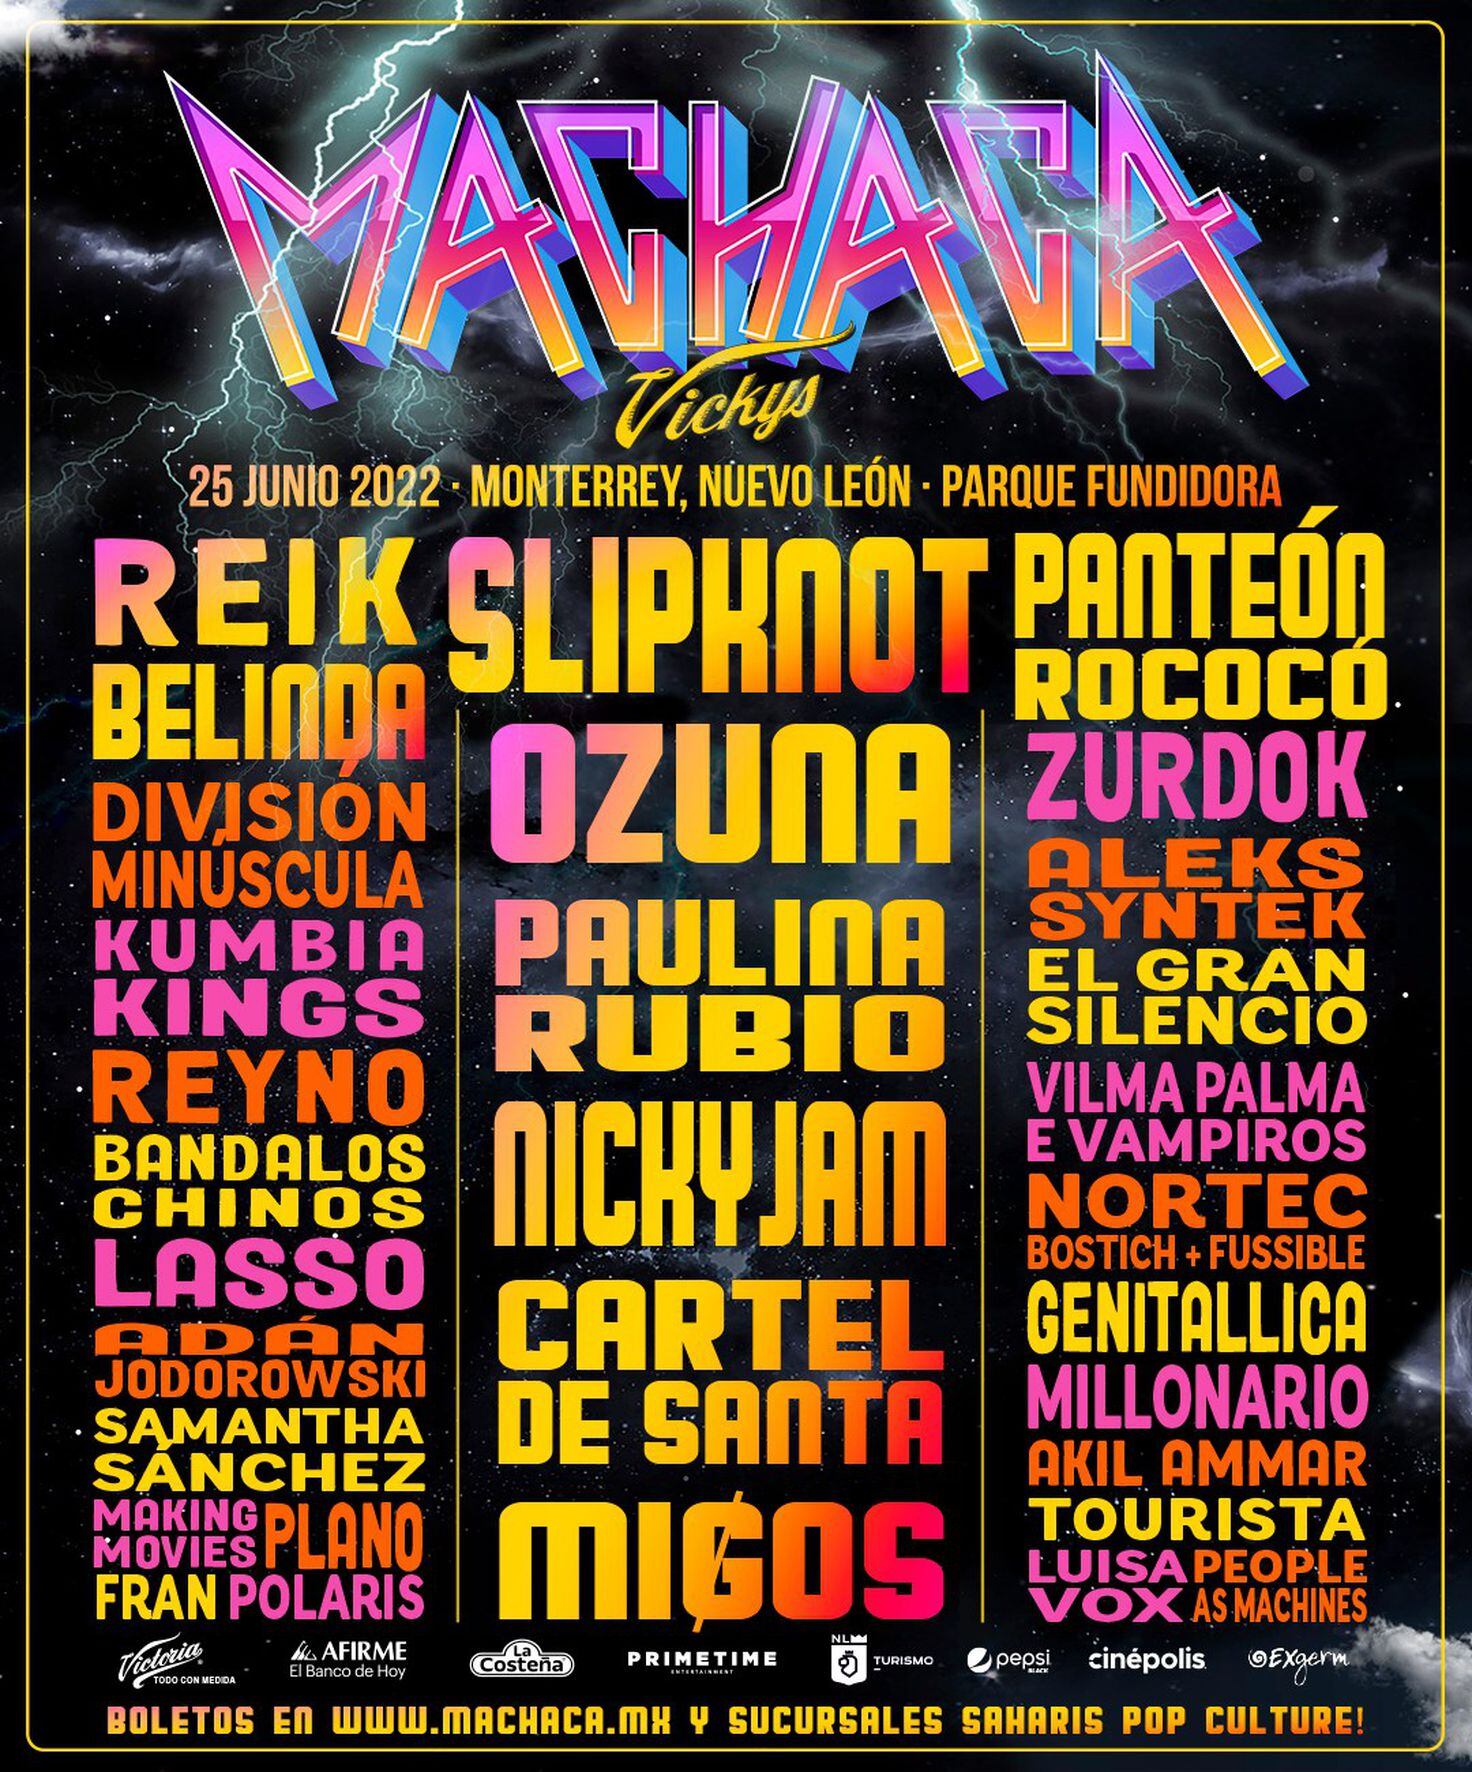 Machaca Fest 2022 artistas y horarios oficiales del evento Tikitakas